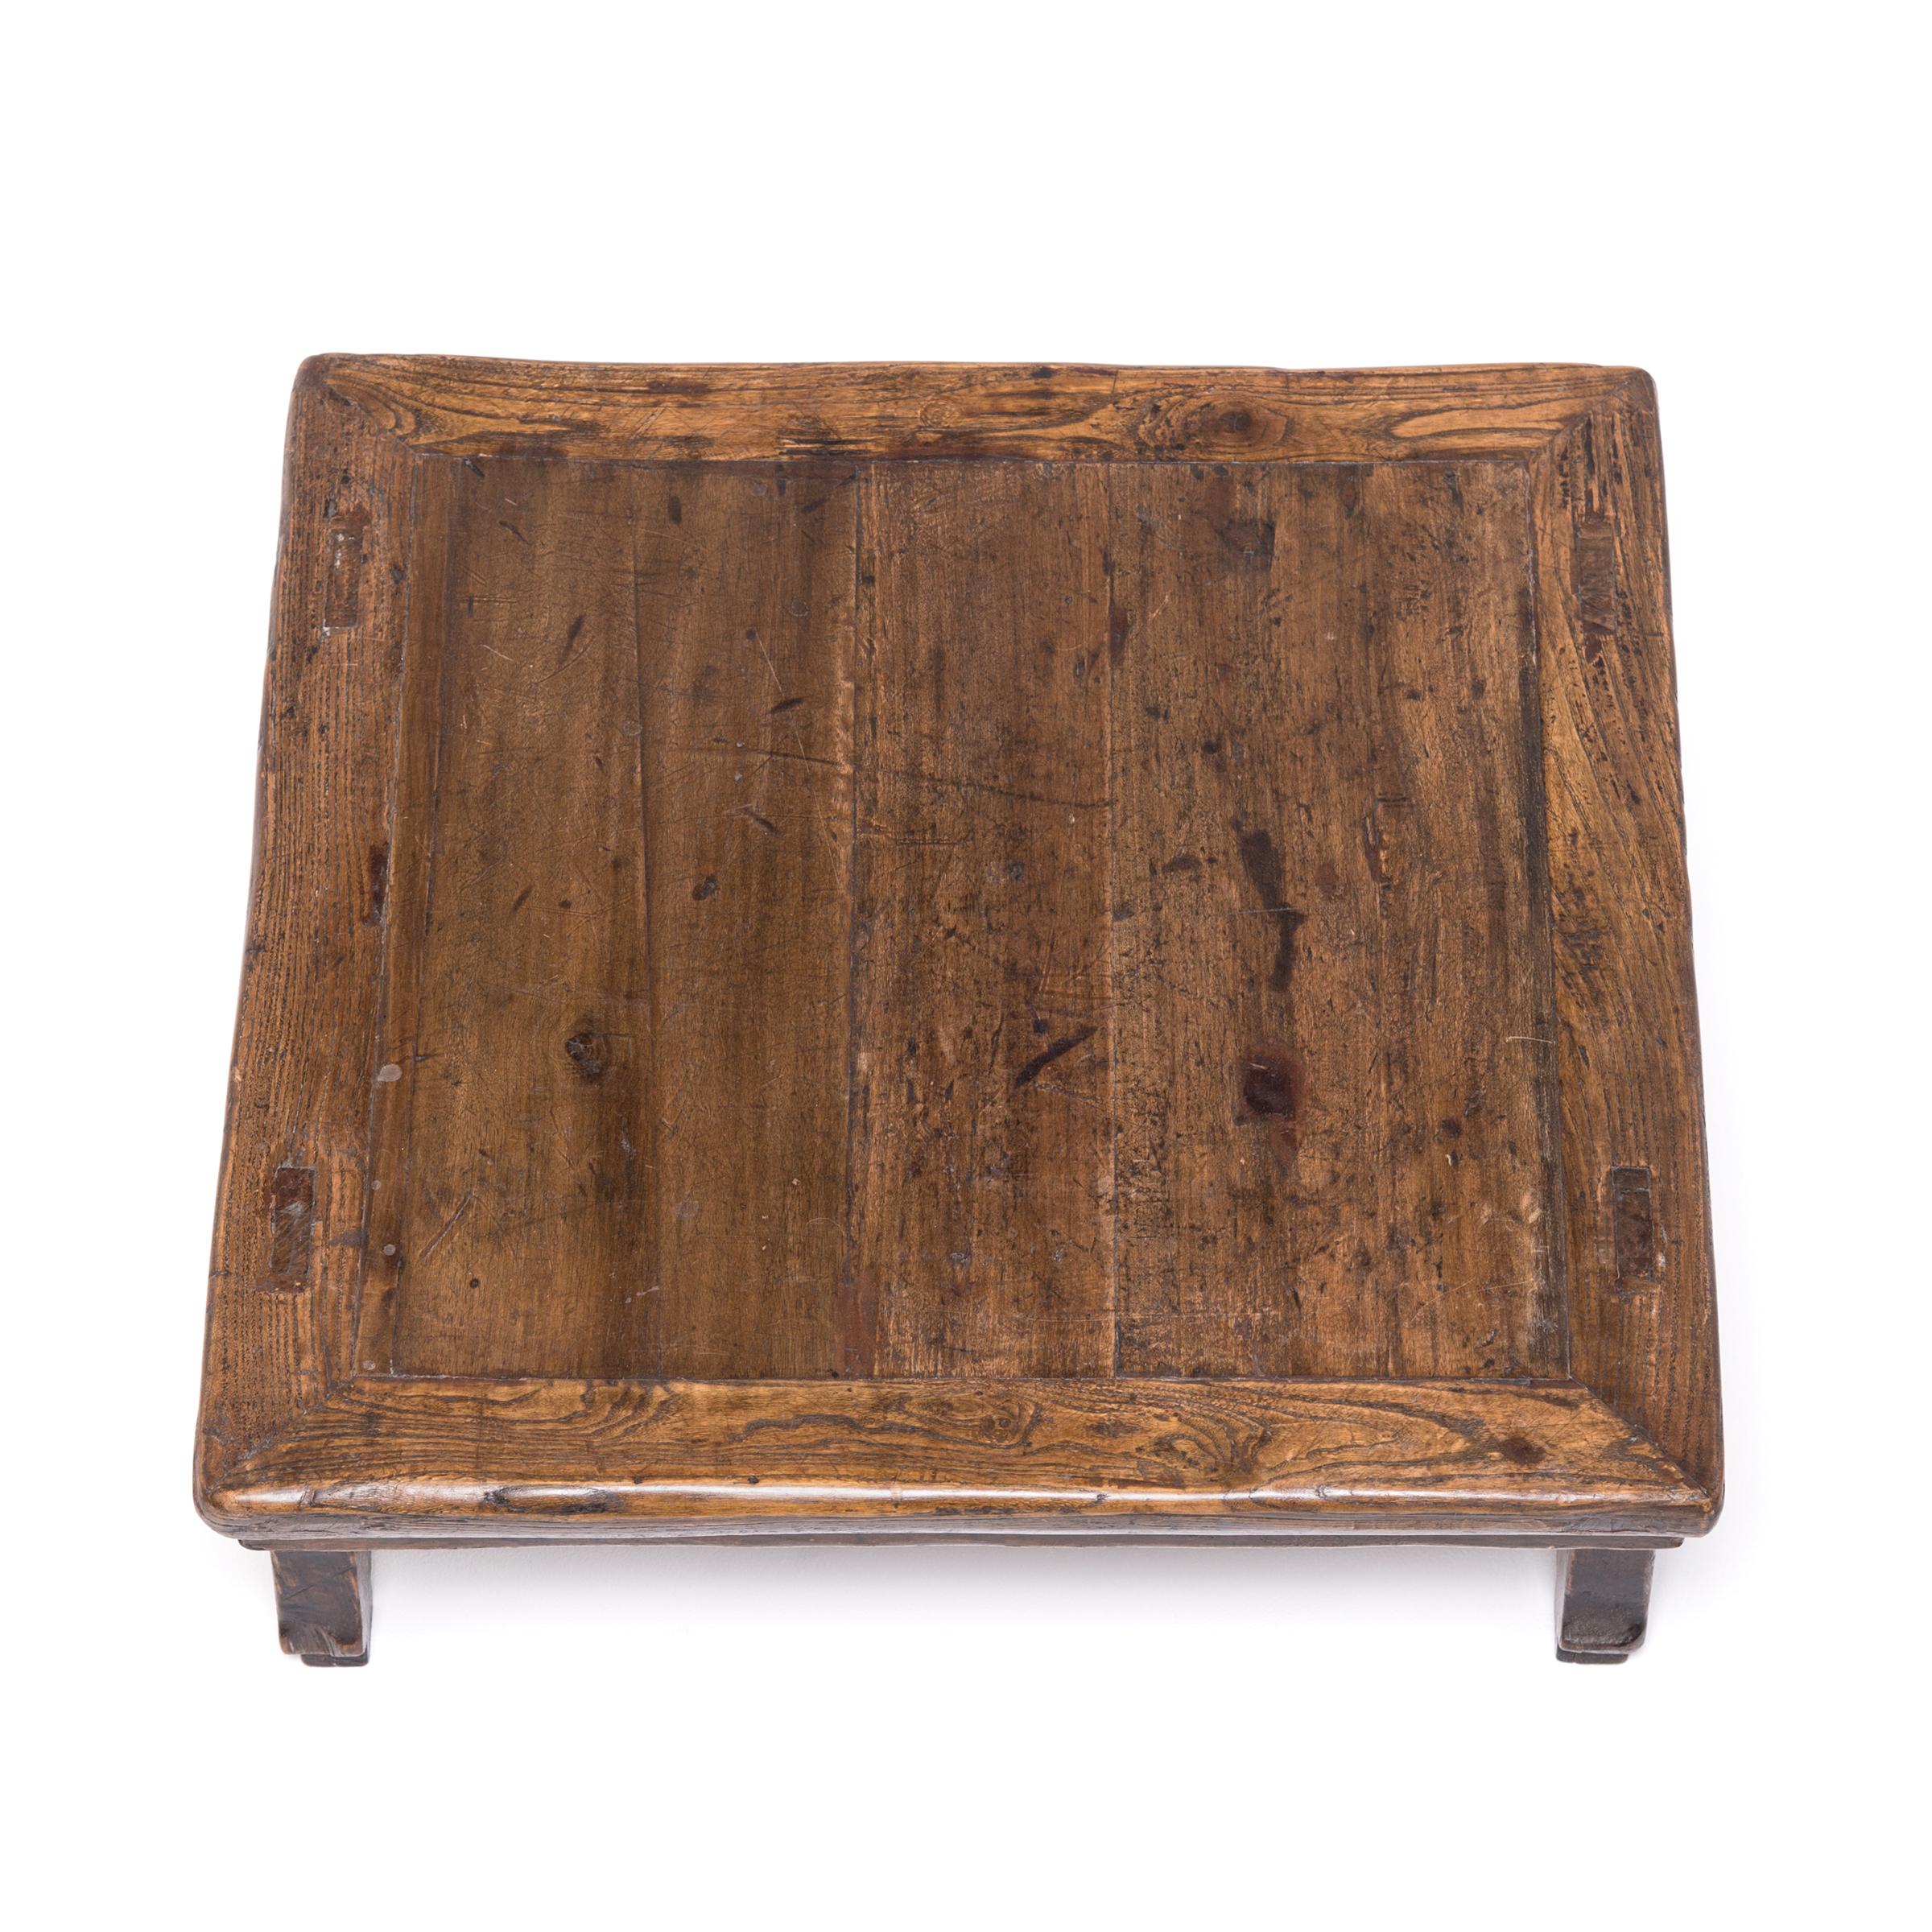 Cette jolie table basse servait autrefois du vin, de la nourriture et des jeux de société à des invités qui s'asseyaient ou s'inclinaient sur une plate-forme ou un plancher. Fabriquée en bois d'orme du nord de la Chine (yumu), cette petite table est